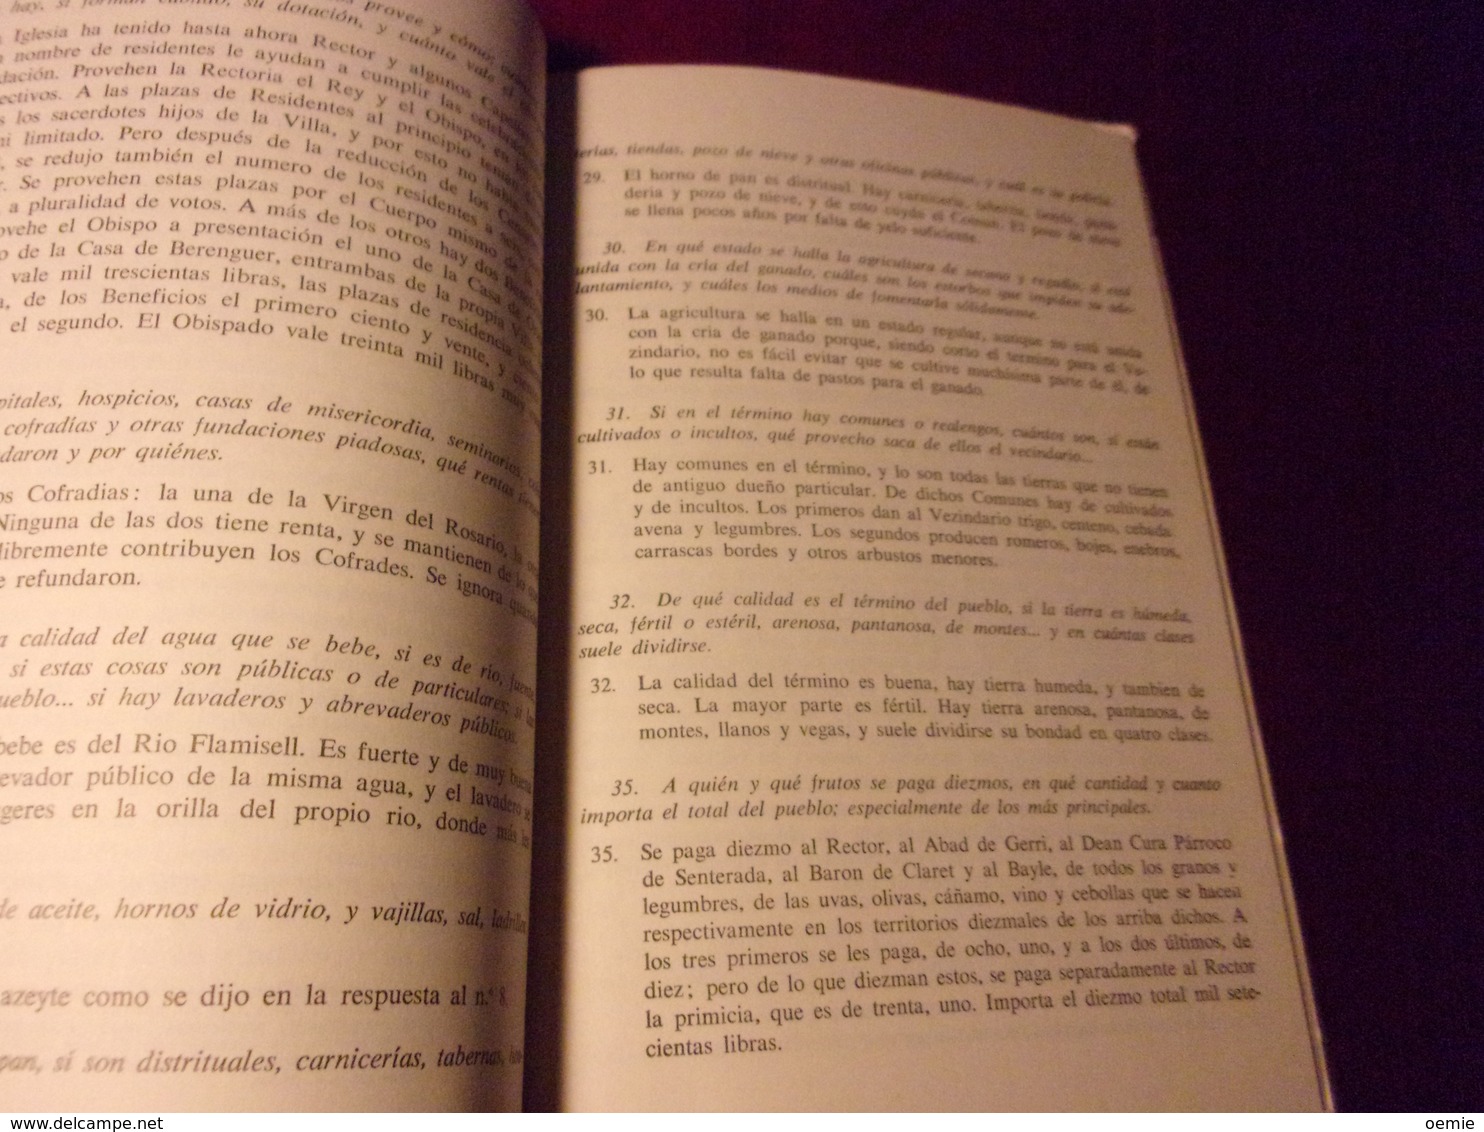 RESPOSTA DE LA POBLA DE SEGUR AL QUESTIONARI DE FRANCISCO DE ZAMORA  1790  EDITION COMU DE PARTICULARS  1970 - Kultur